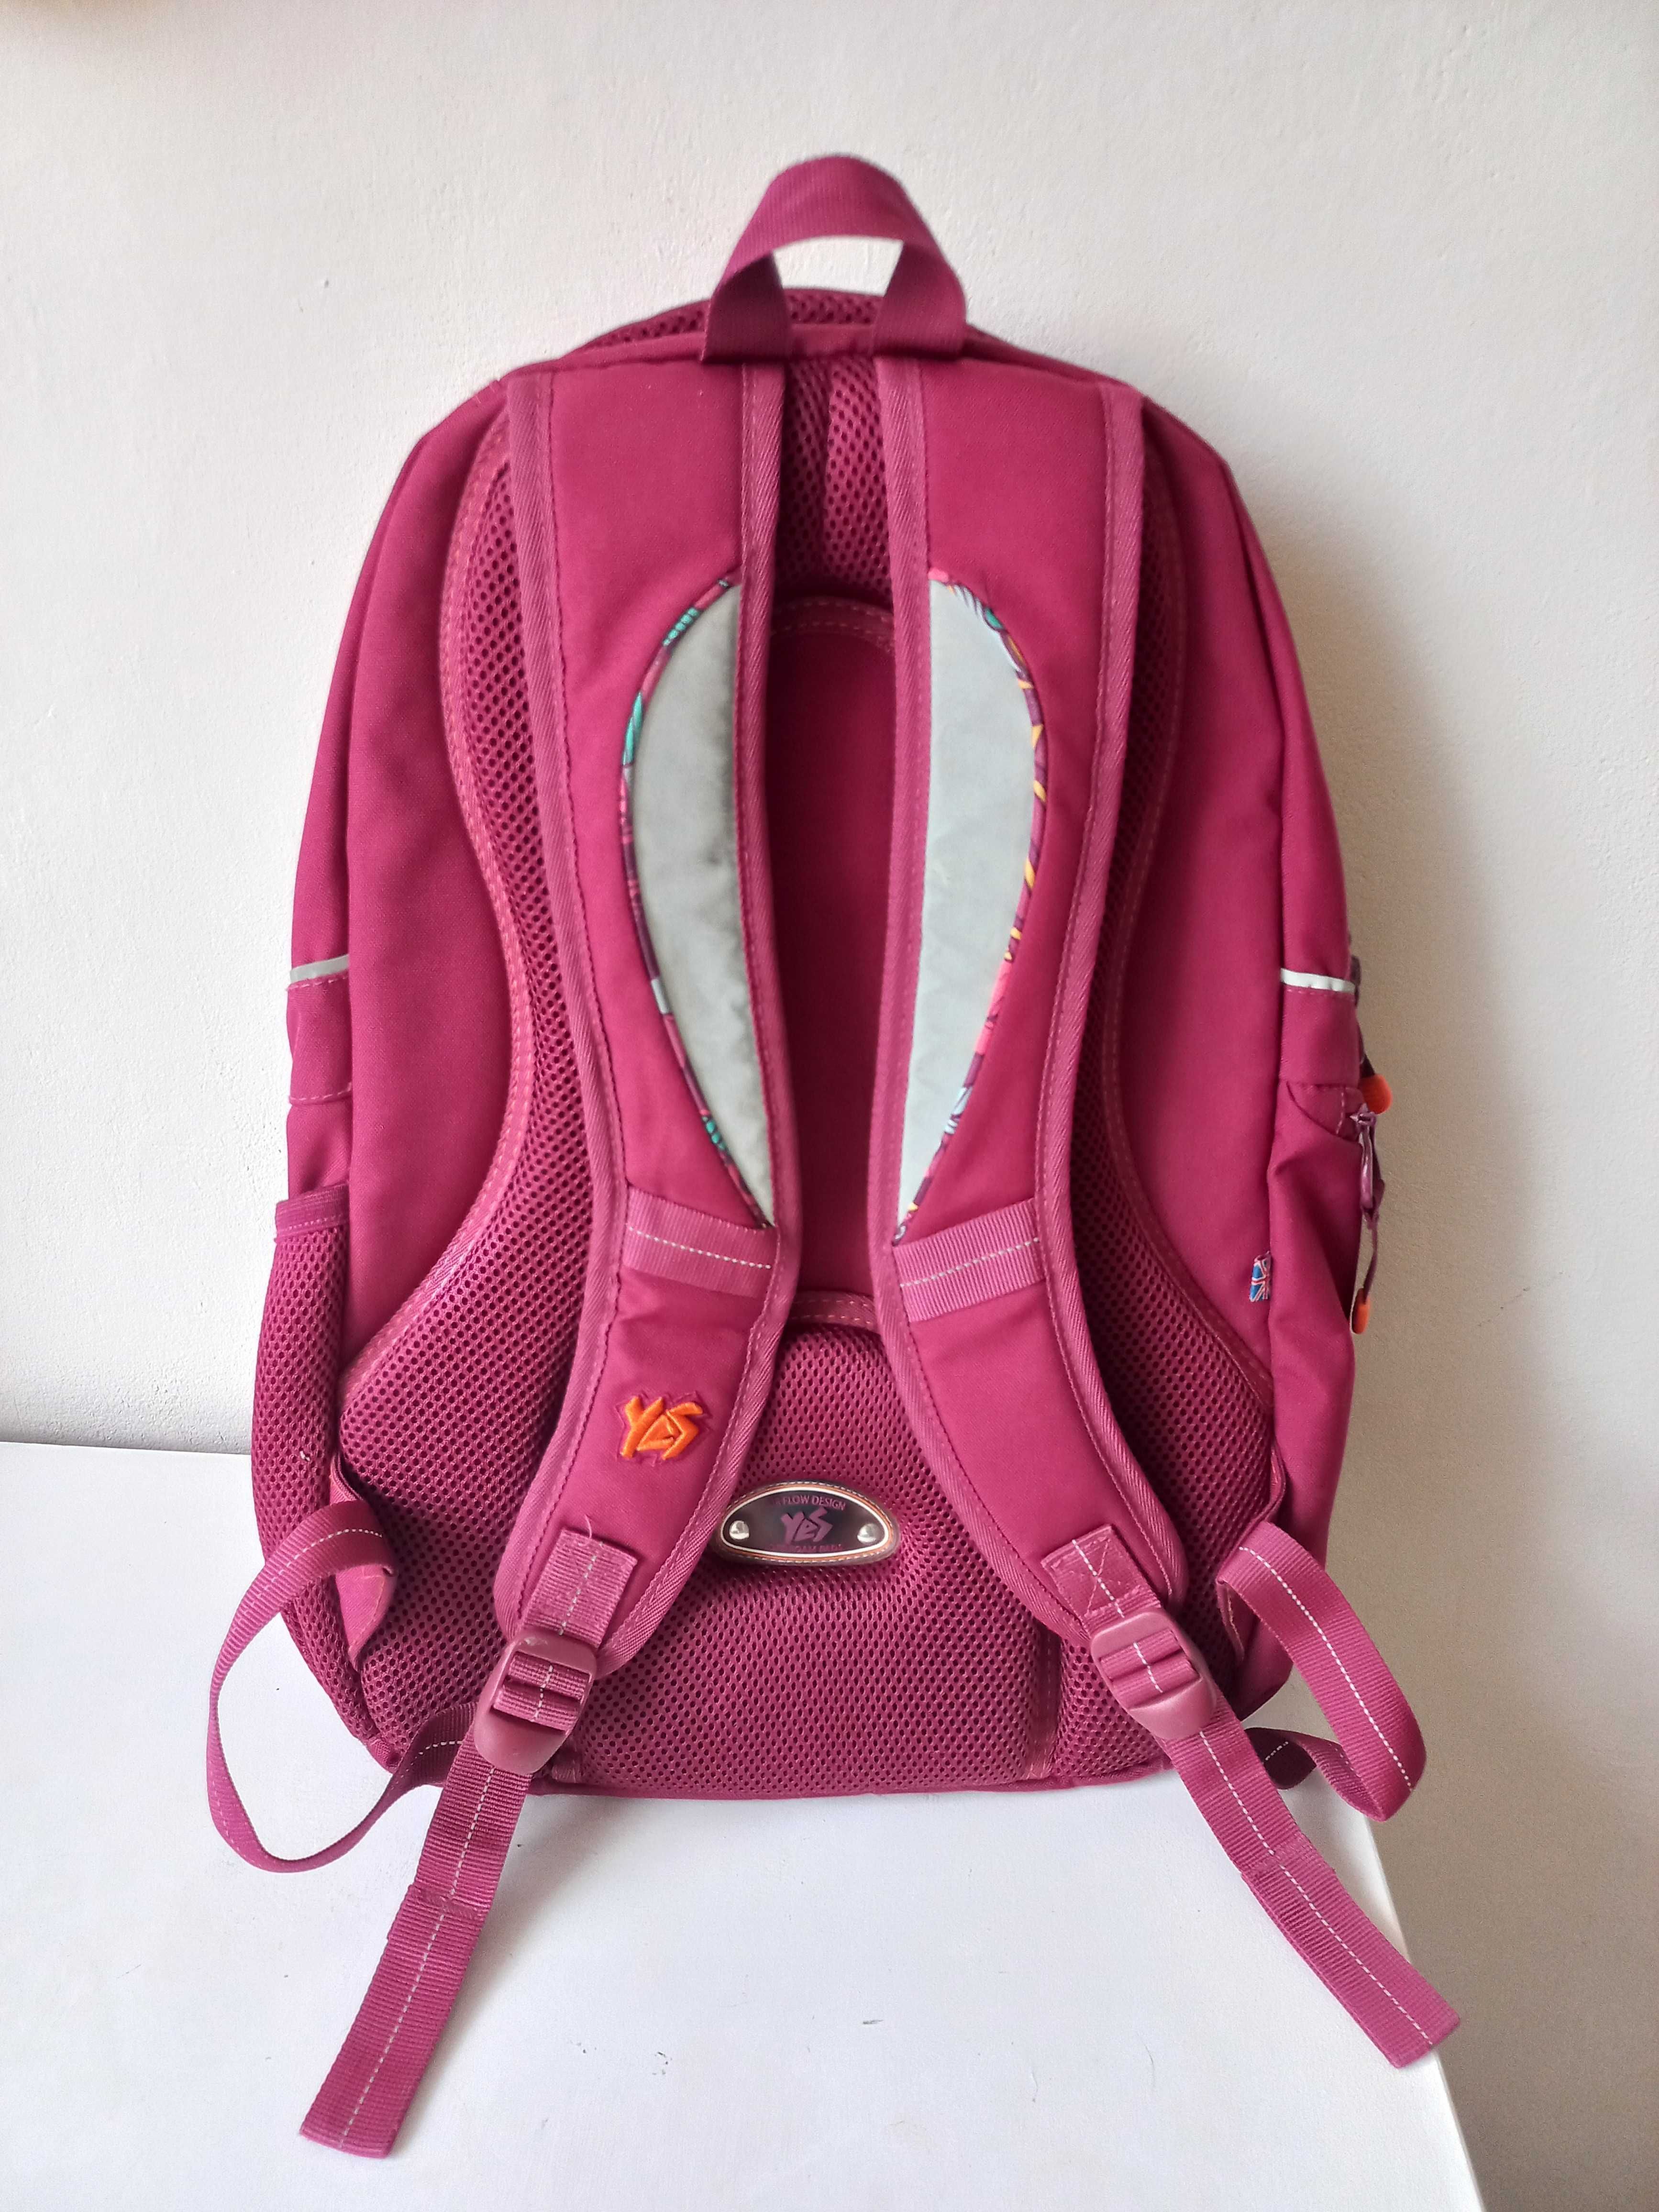 Шкільний рюкзак, наплічник, рюкзак для дівчини